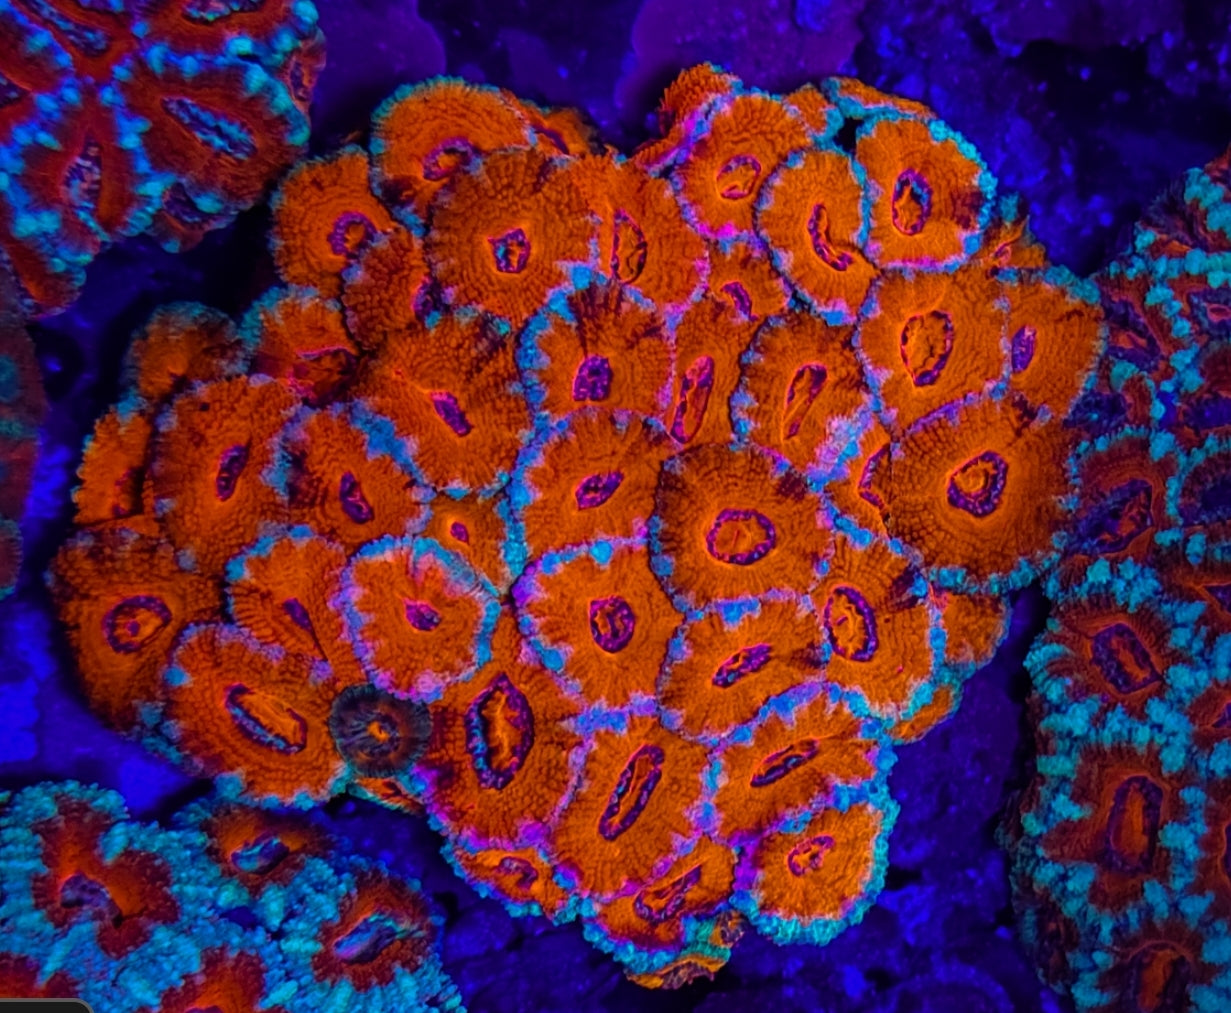 WYSIWYG L/G Tangerine Dream Acan colony coral